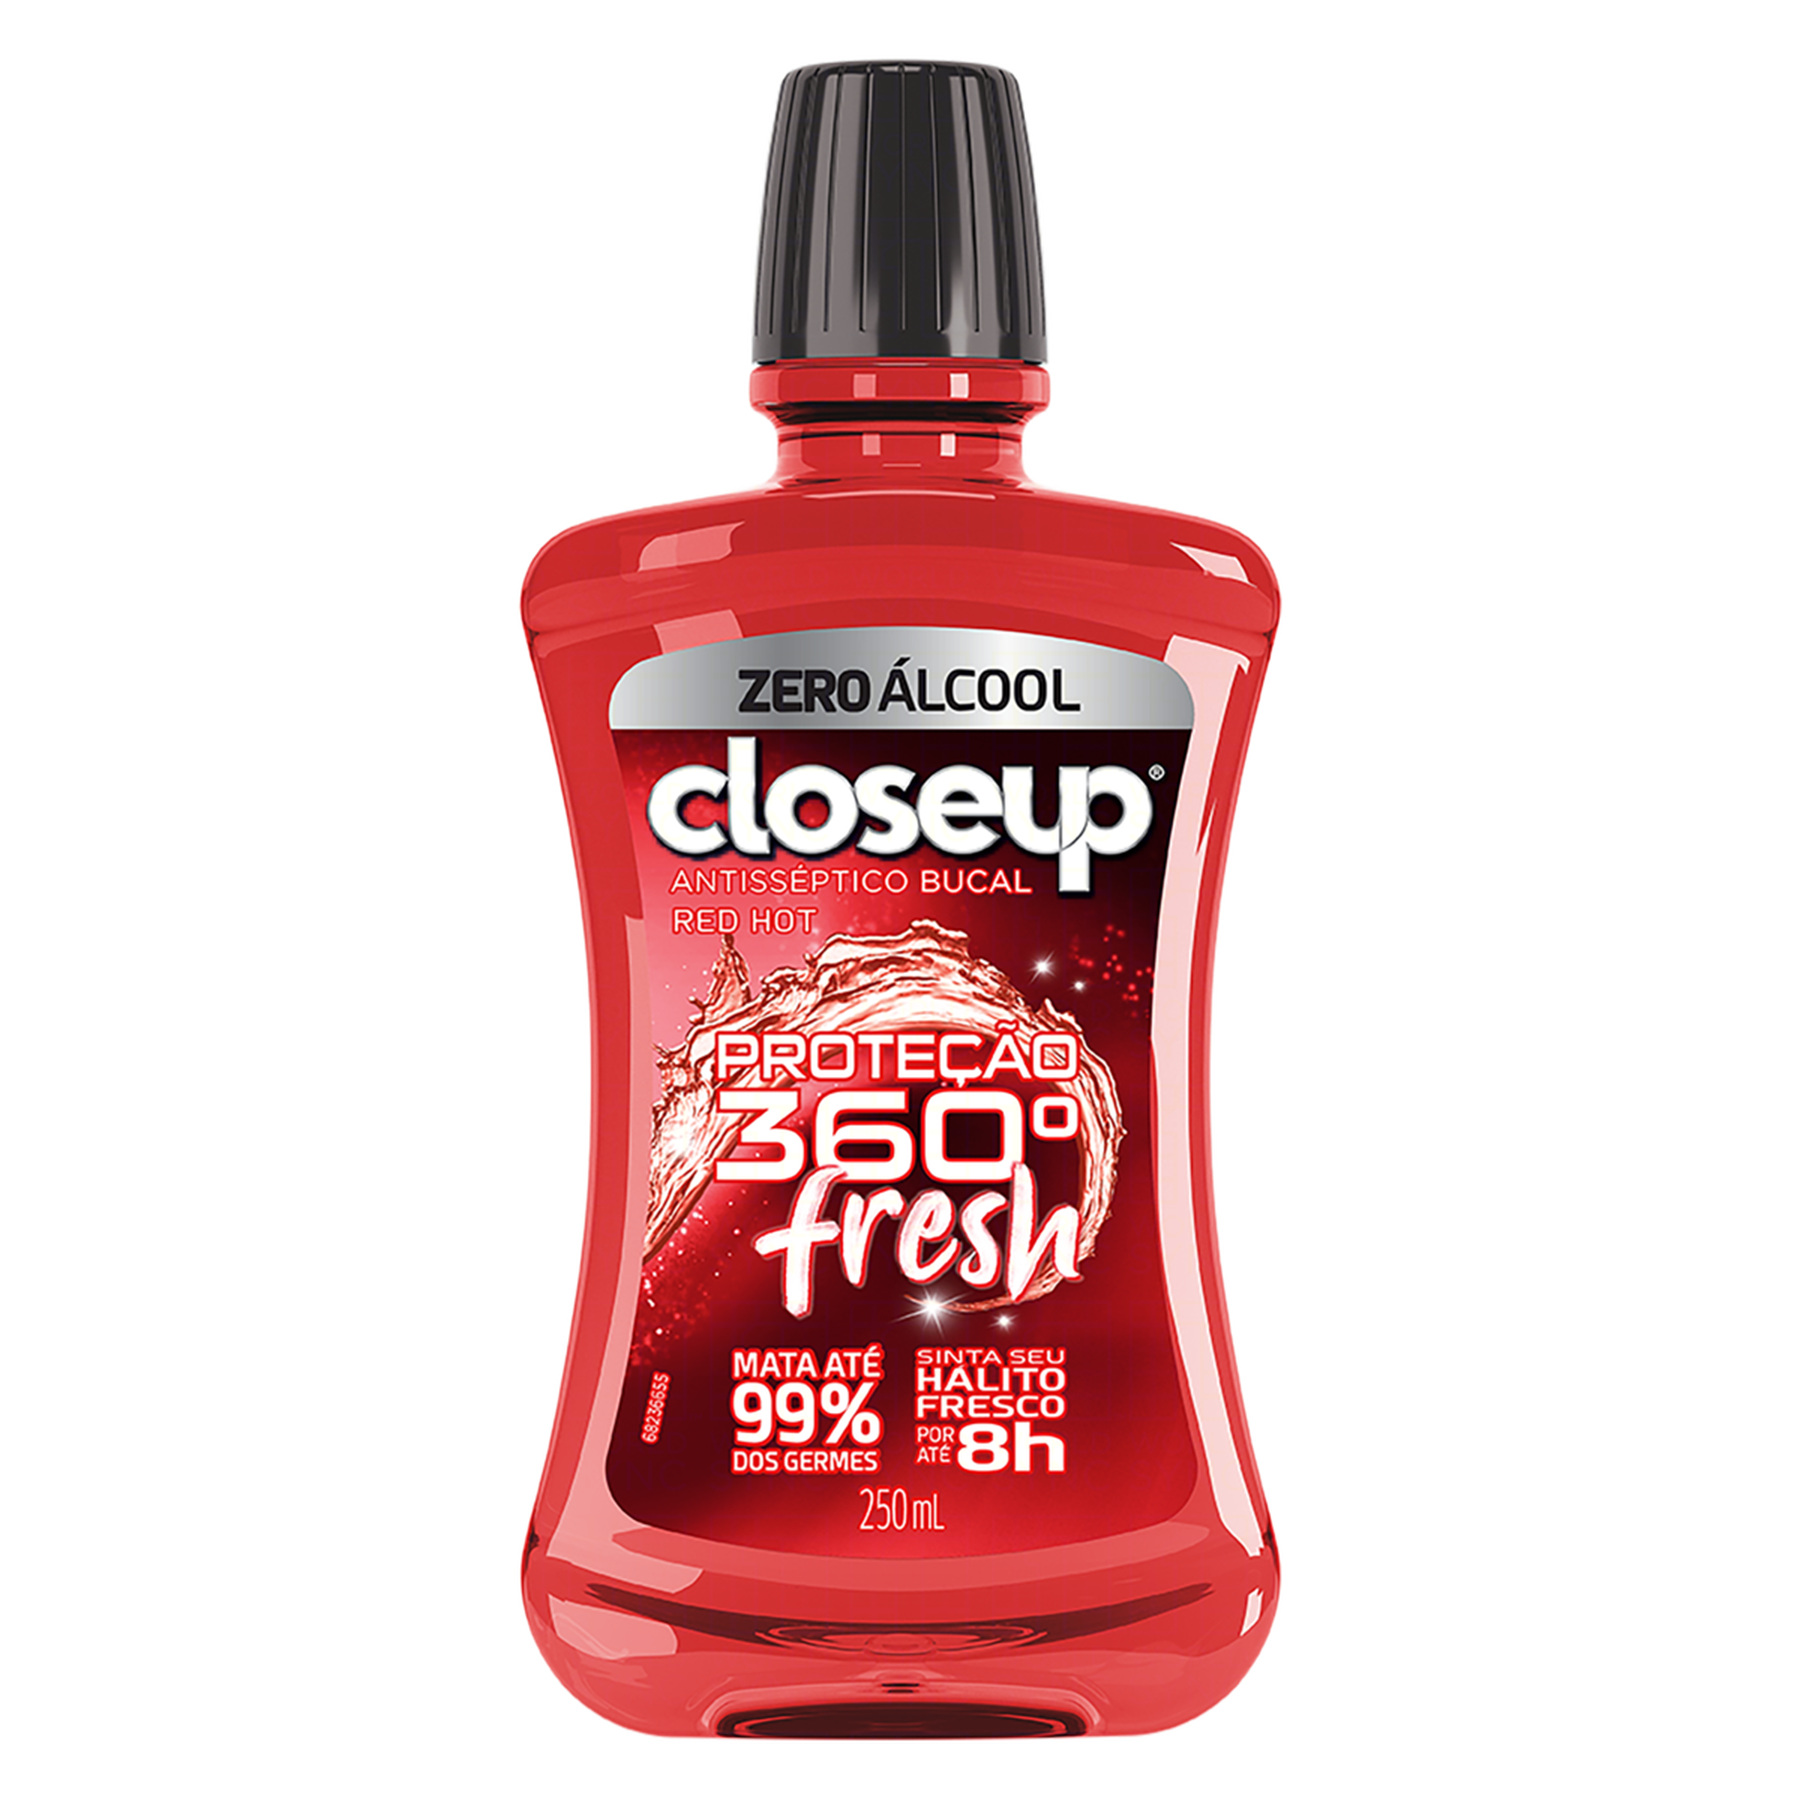 Enxaguante Bucal Antisséptico Zero Álcool Red Hot Closeup Proteção 360° Fresh Frasco 250ml